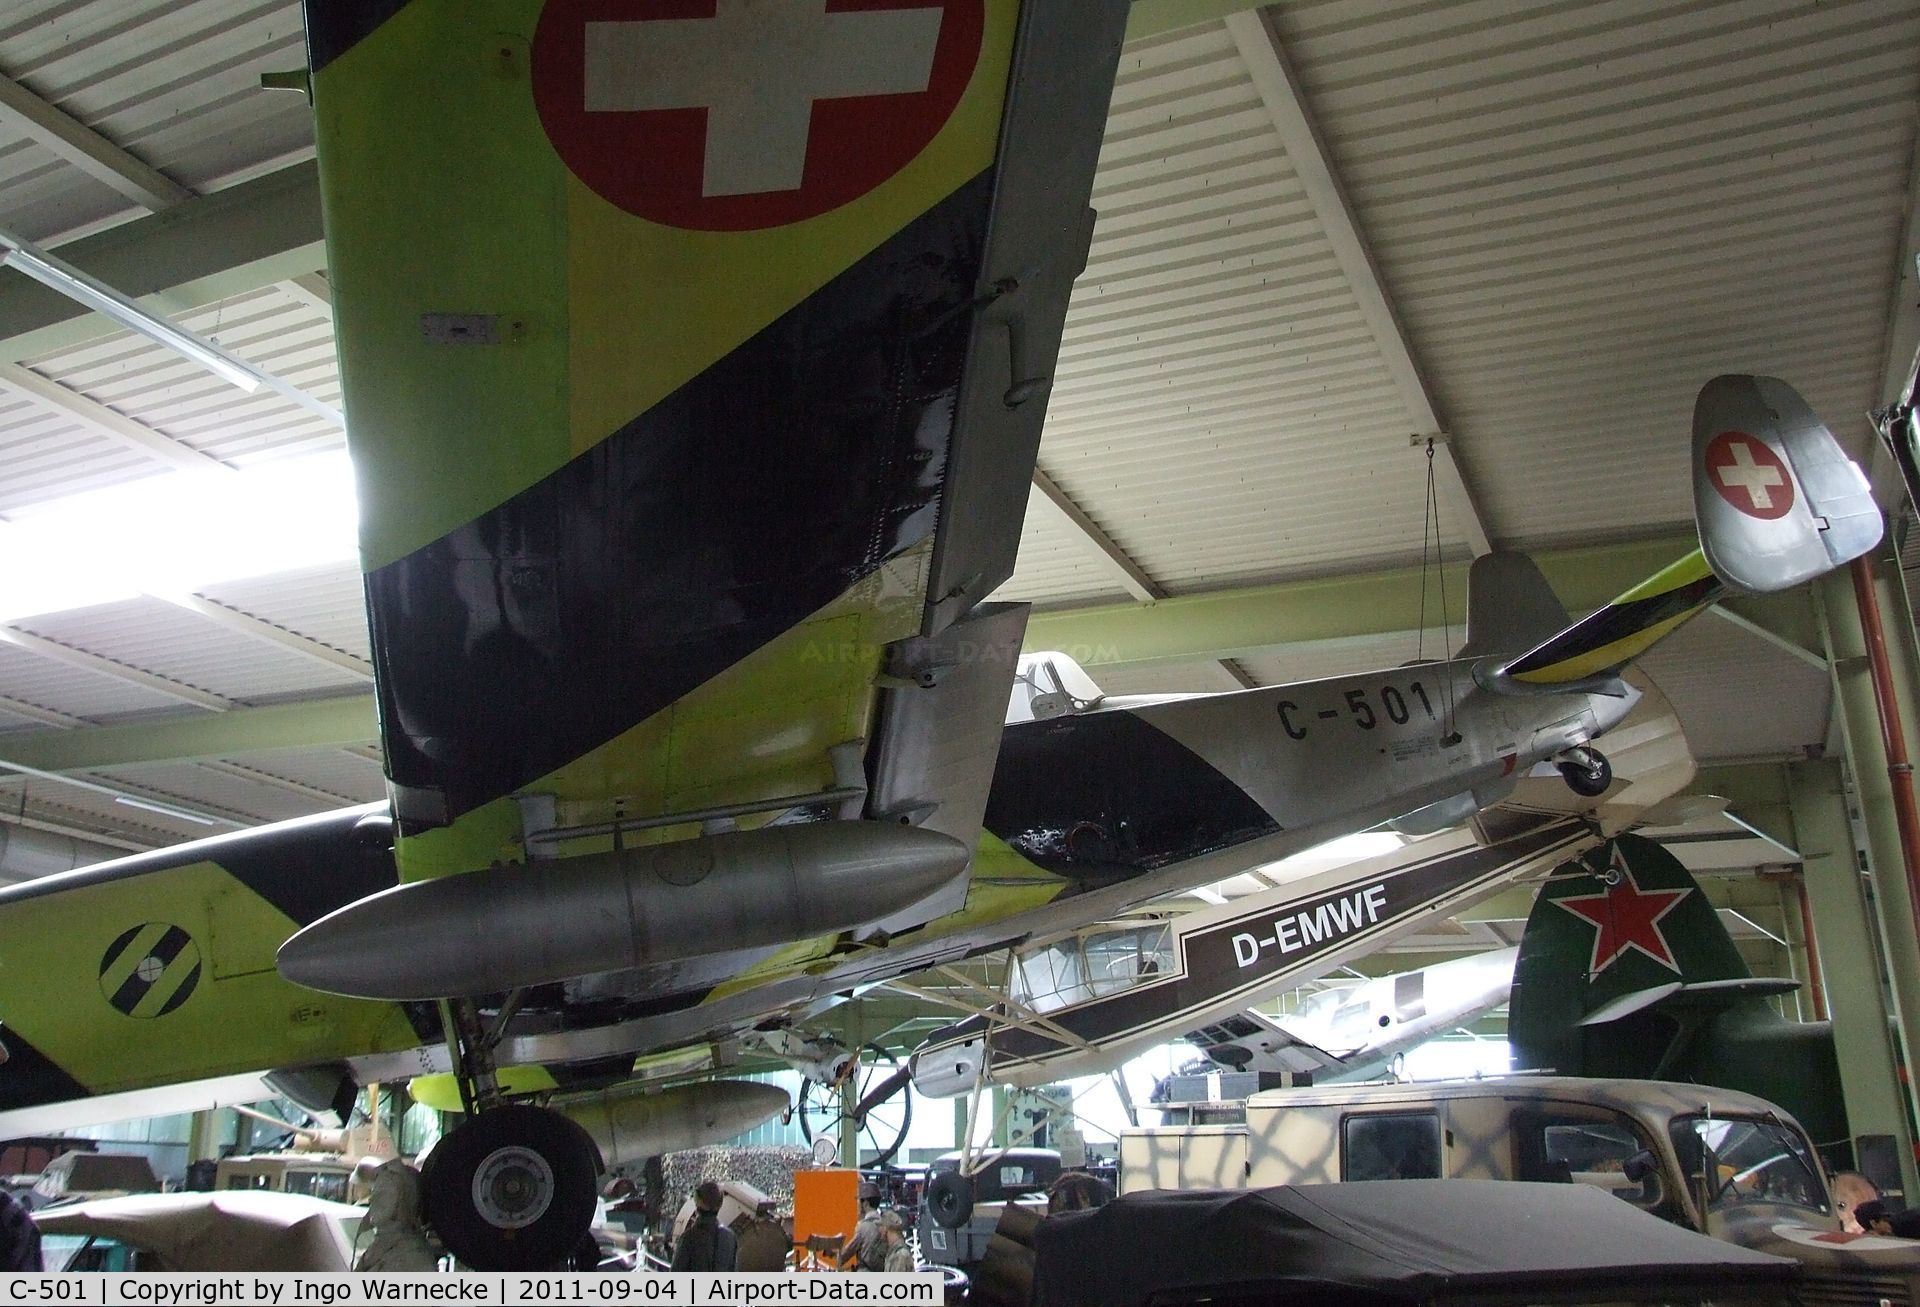 C-501, EKW C-3605 C/N 281, Eidgenössisches Flugzeugwerk (F+W) Emmen C-3605 Schlepp at the Auto & Technik Museum, Sinsheim